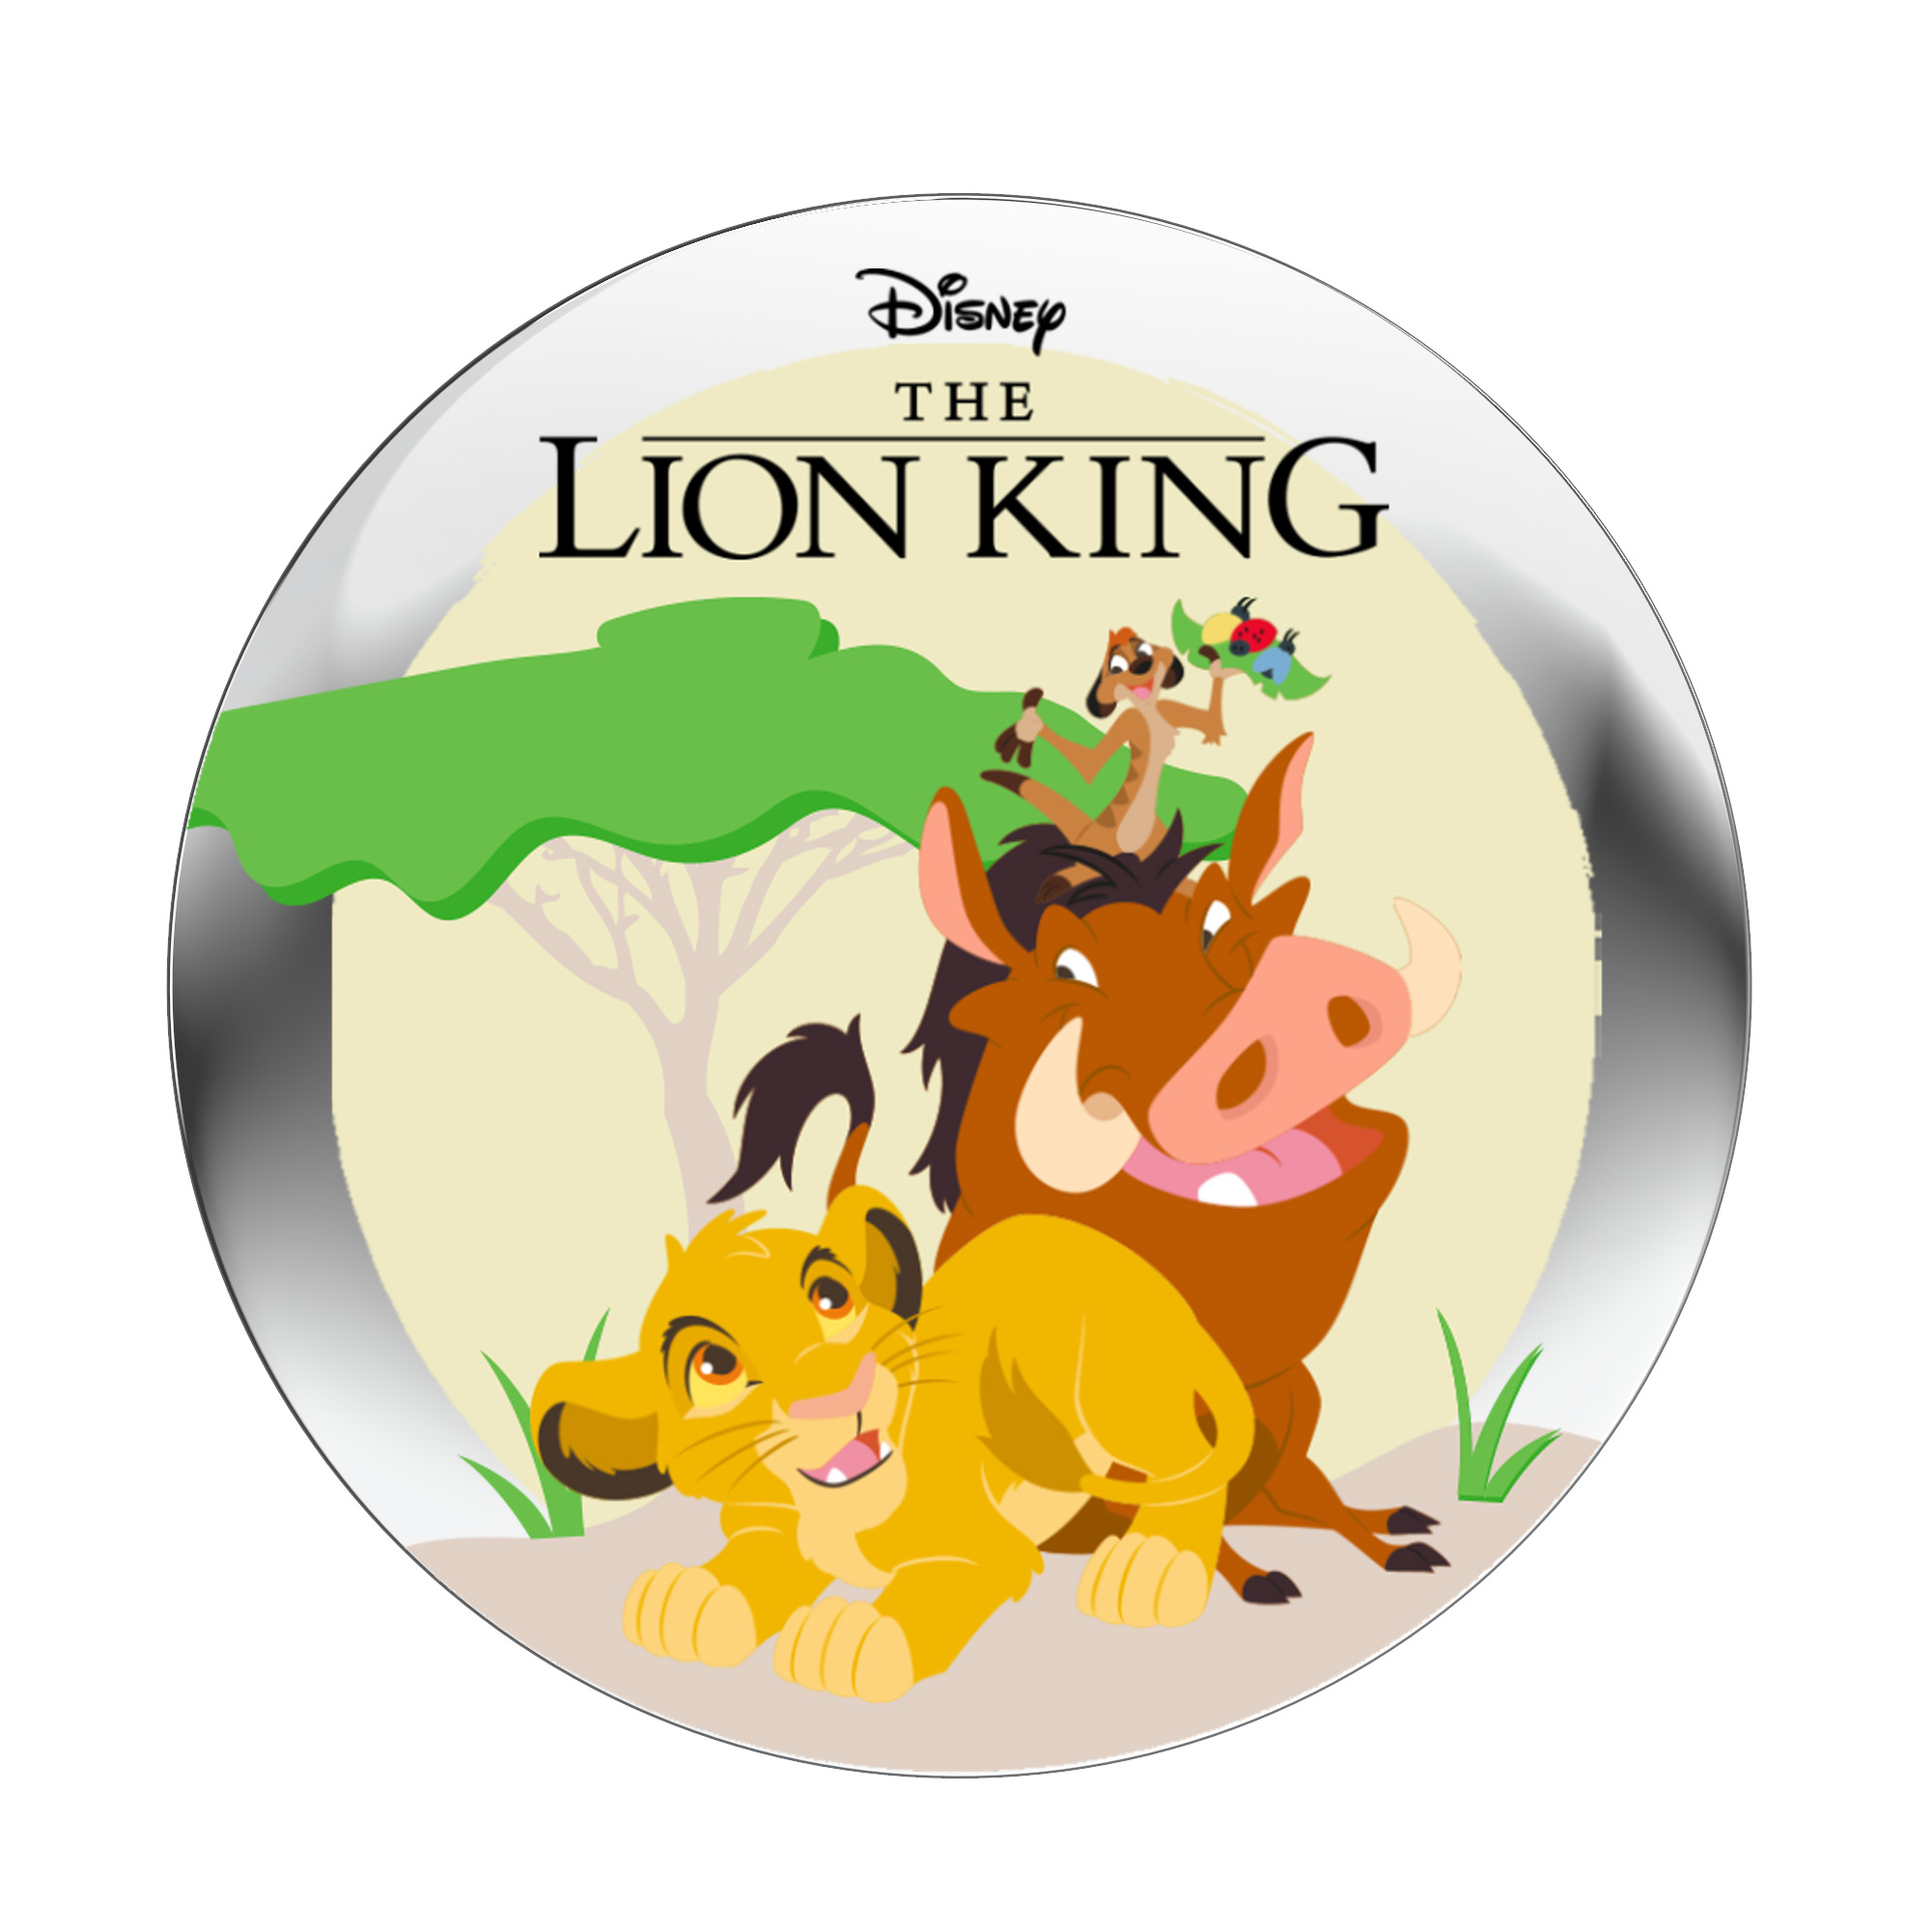  StoryShield - Audiogeschichte StoryPhones der Audio Löwen\' für (Download \'König Track) - - Disney